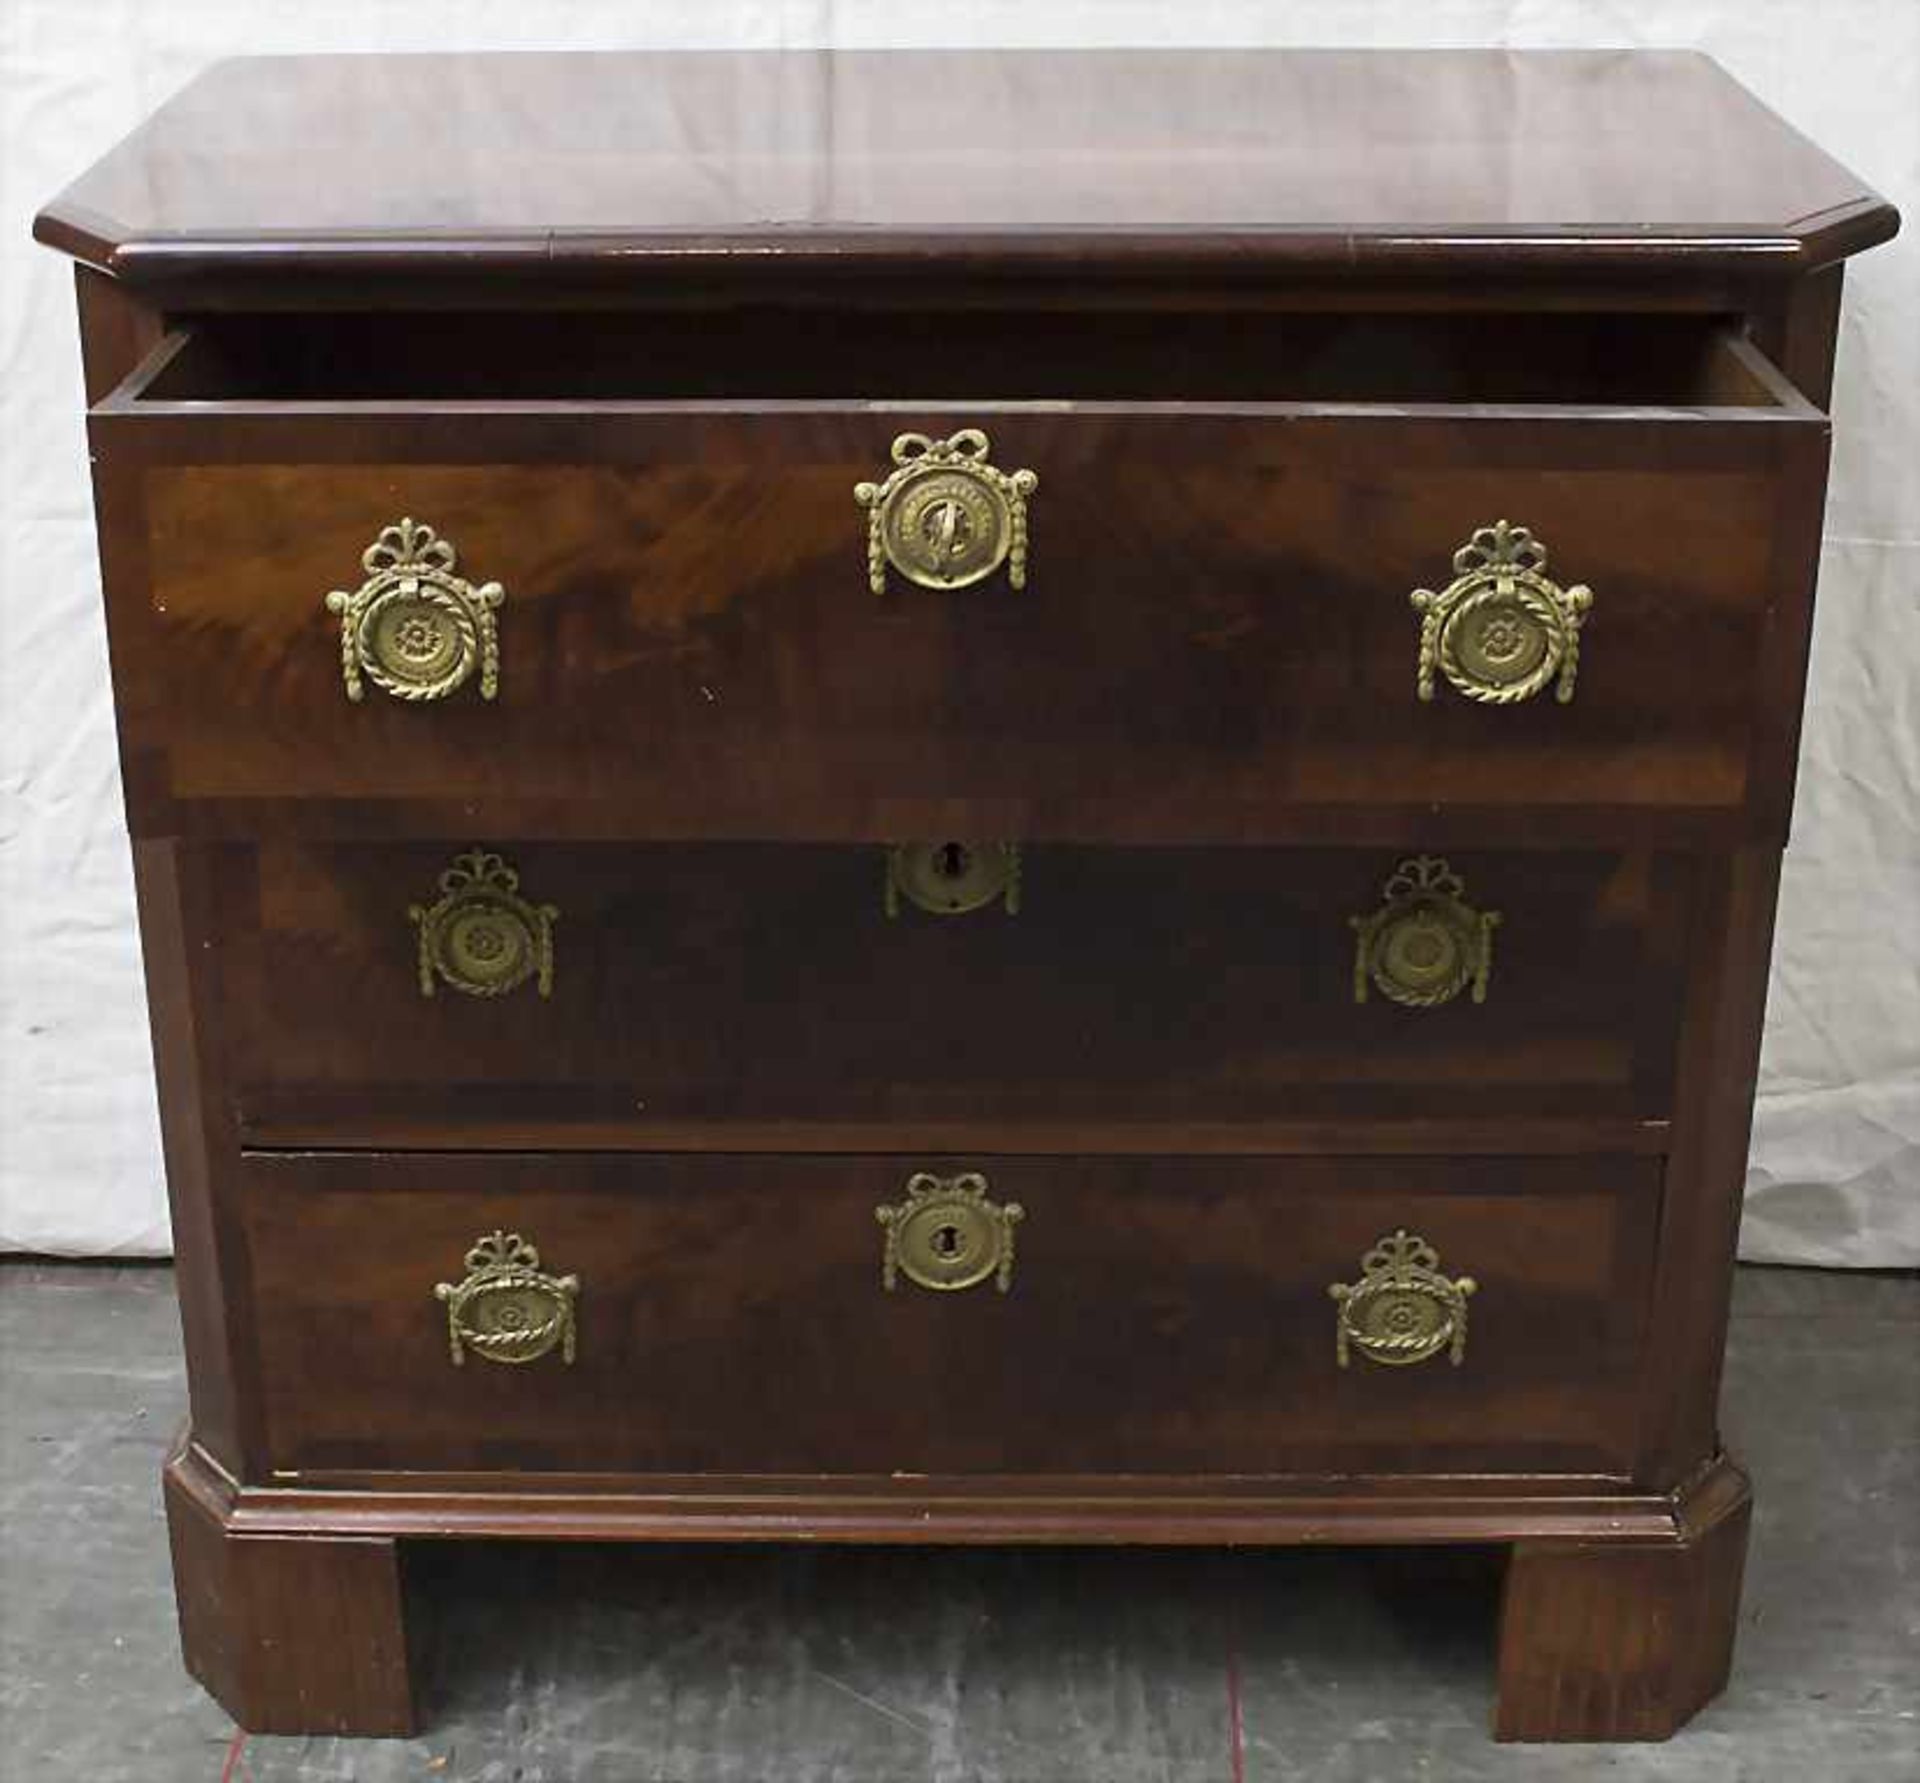 Kommode / A chest of drawers, 19. Jh.Material: Mahagoni, furniert, Messingbeschläge, Maße: H. 76 cm, - Bild 2 aus 2